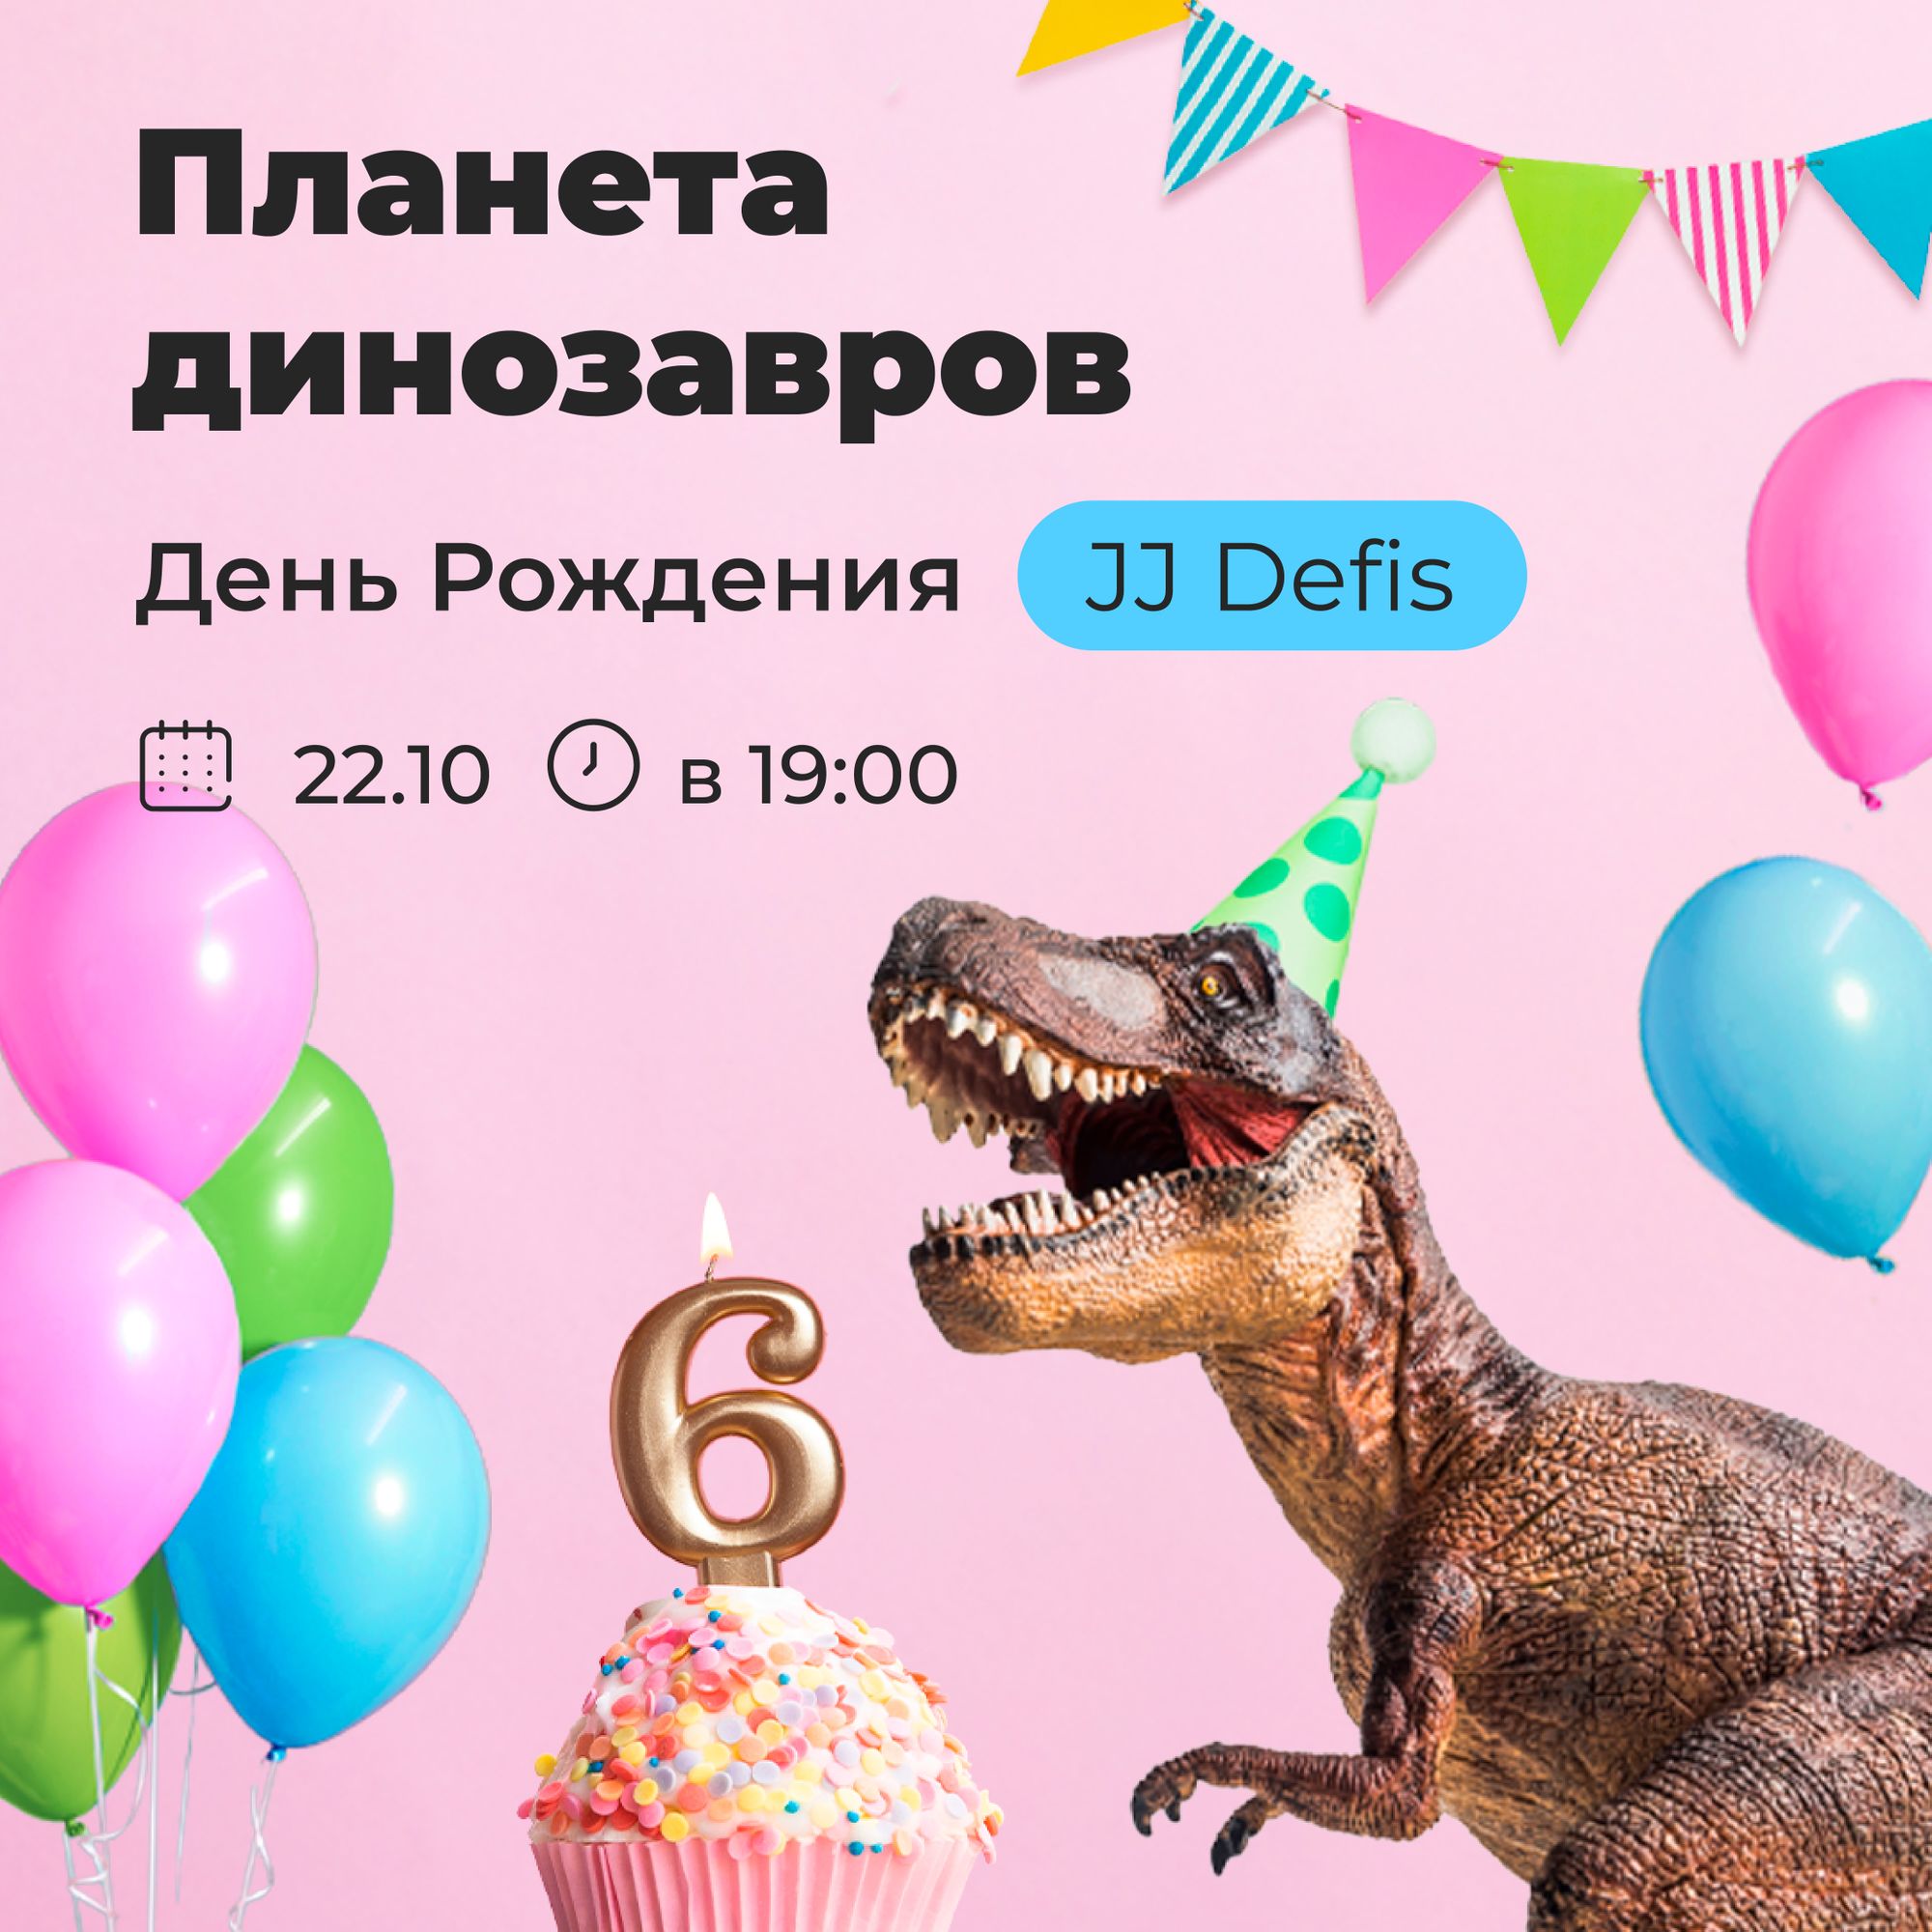 22 октября — Шоу «Планета динозавров» в честь Дня Рождения парка Joki Joya Defis 🦖